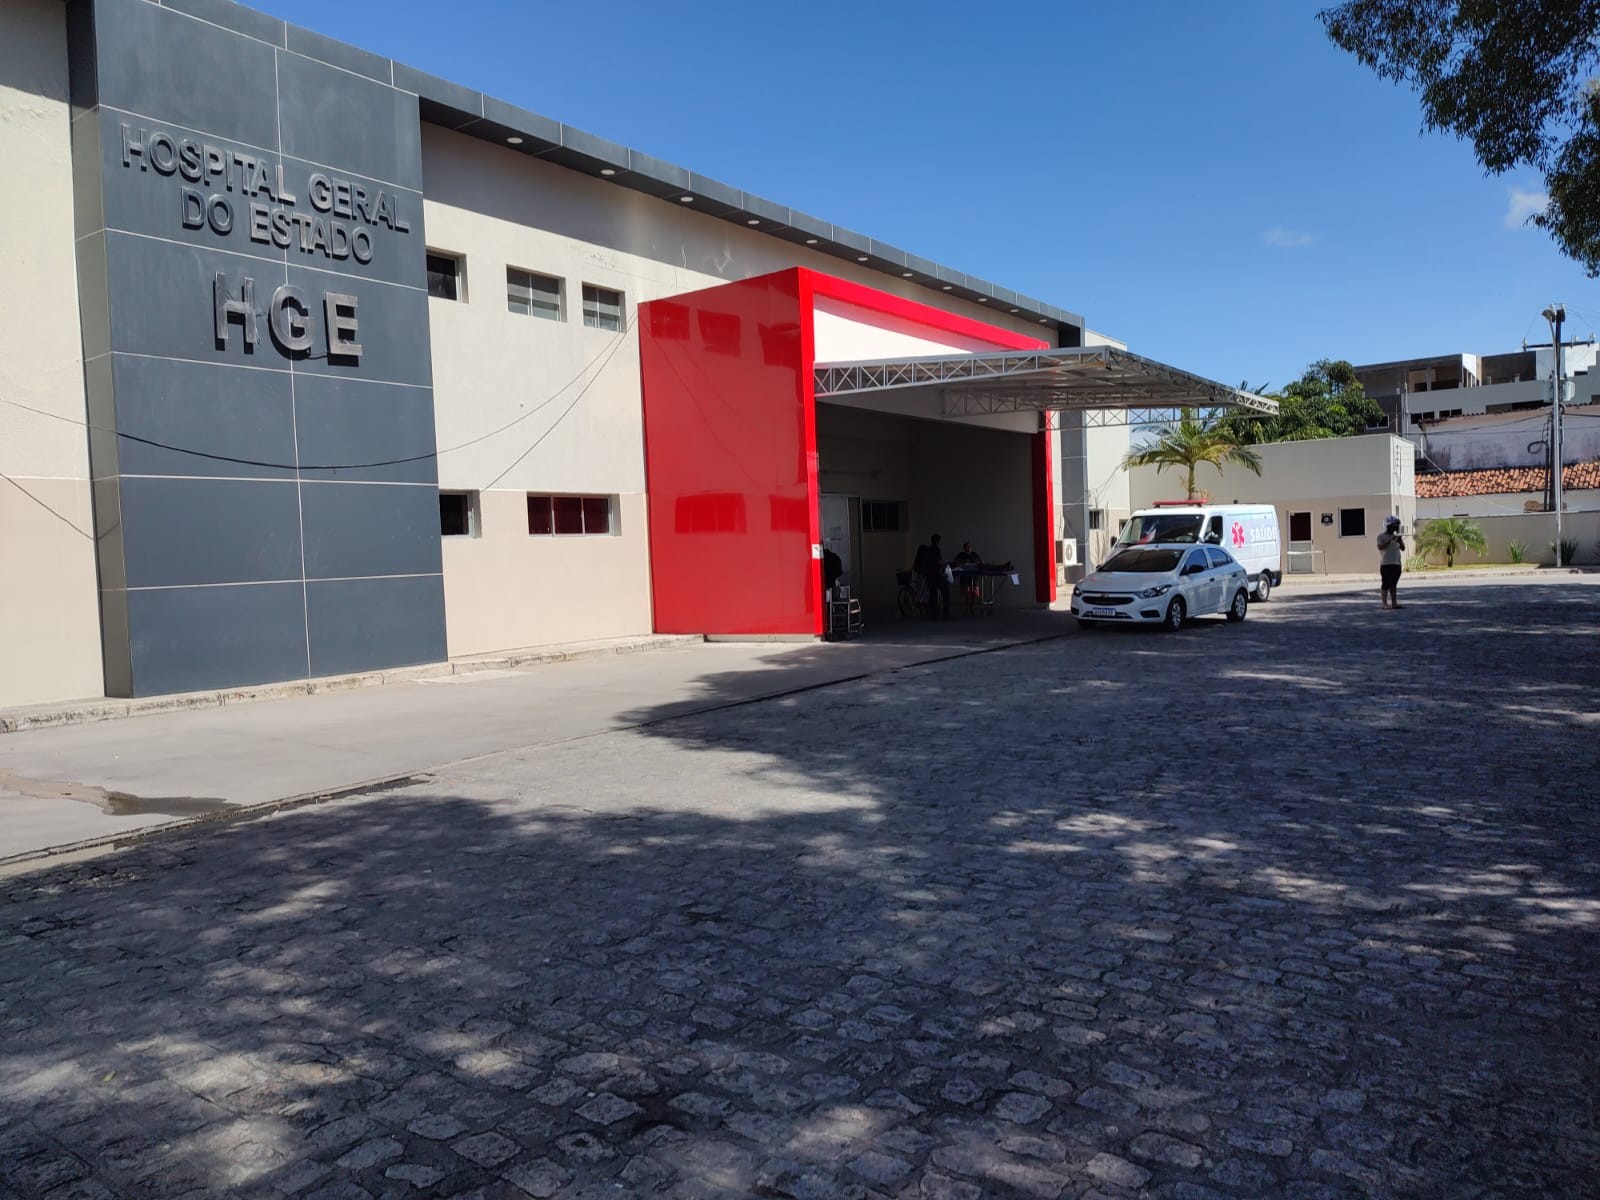 Dois são baleados em frente a sede de torcida organizada no Poço, em Maceió